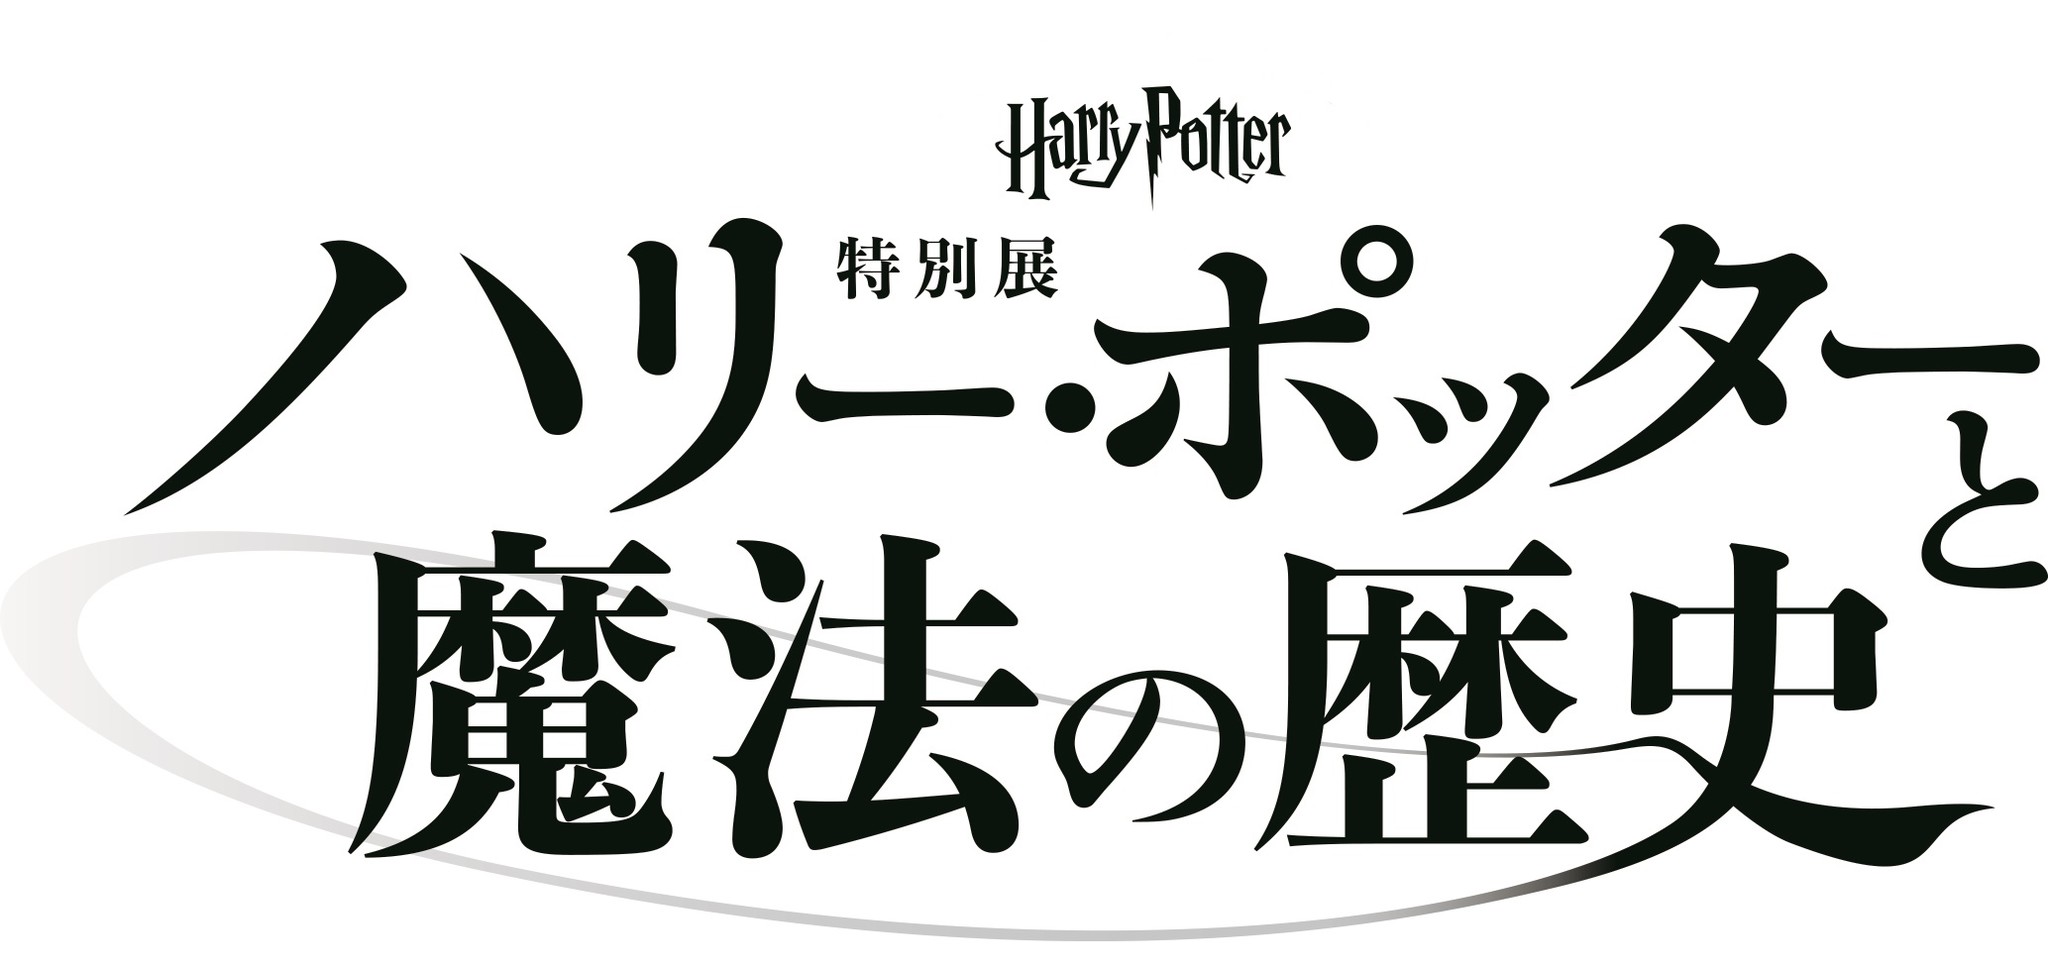 「ハリー・ポッターと魔法の歴史」展 開催延期のお知らせ